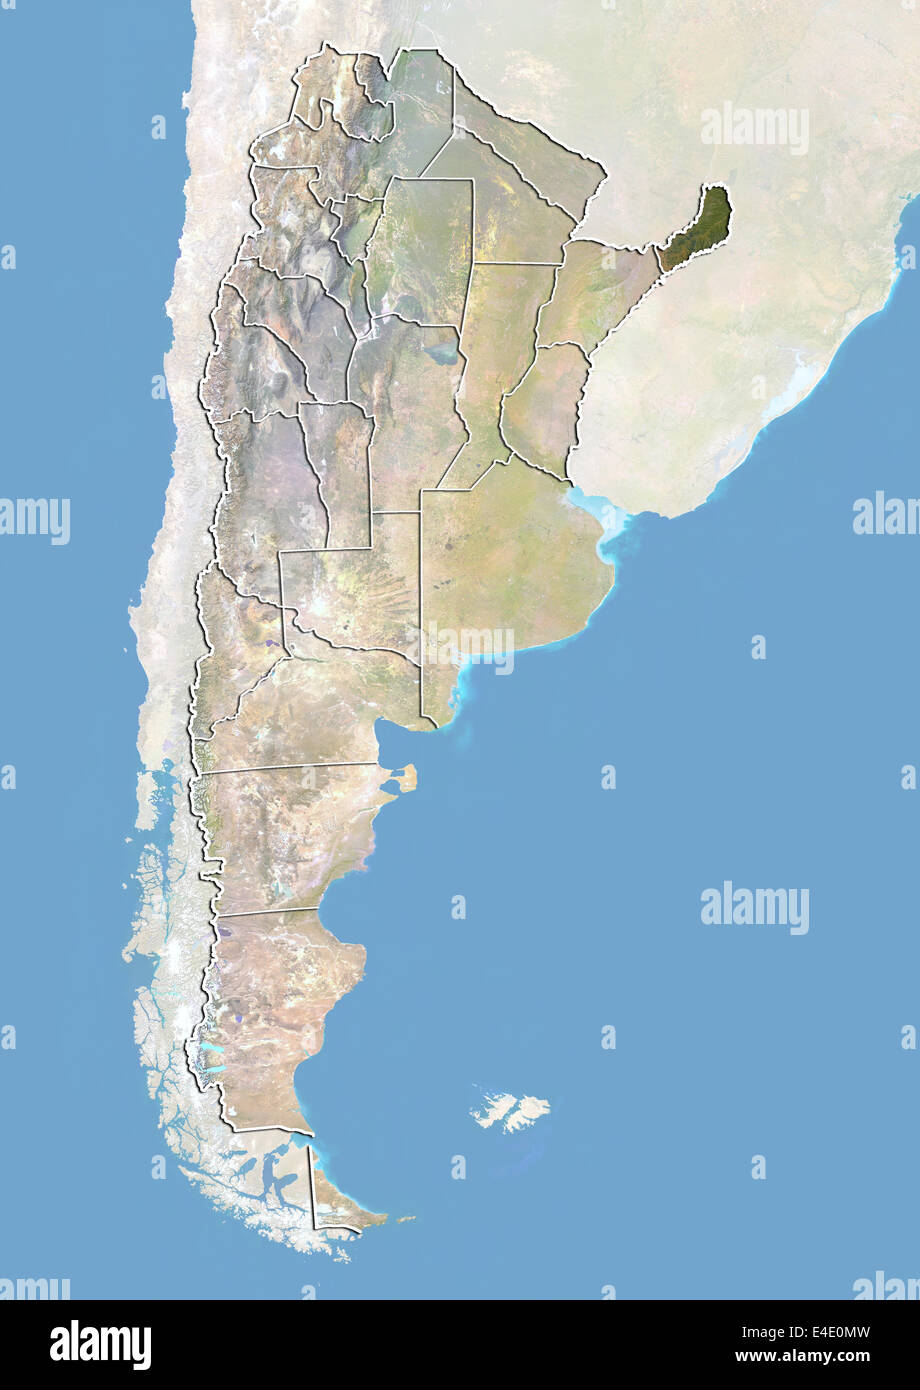 L'Argentine et la province de Misiones, image satellite avec effet de choc Banque D'Images